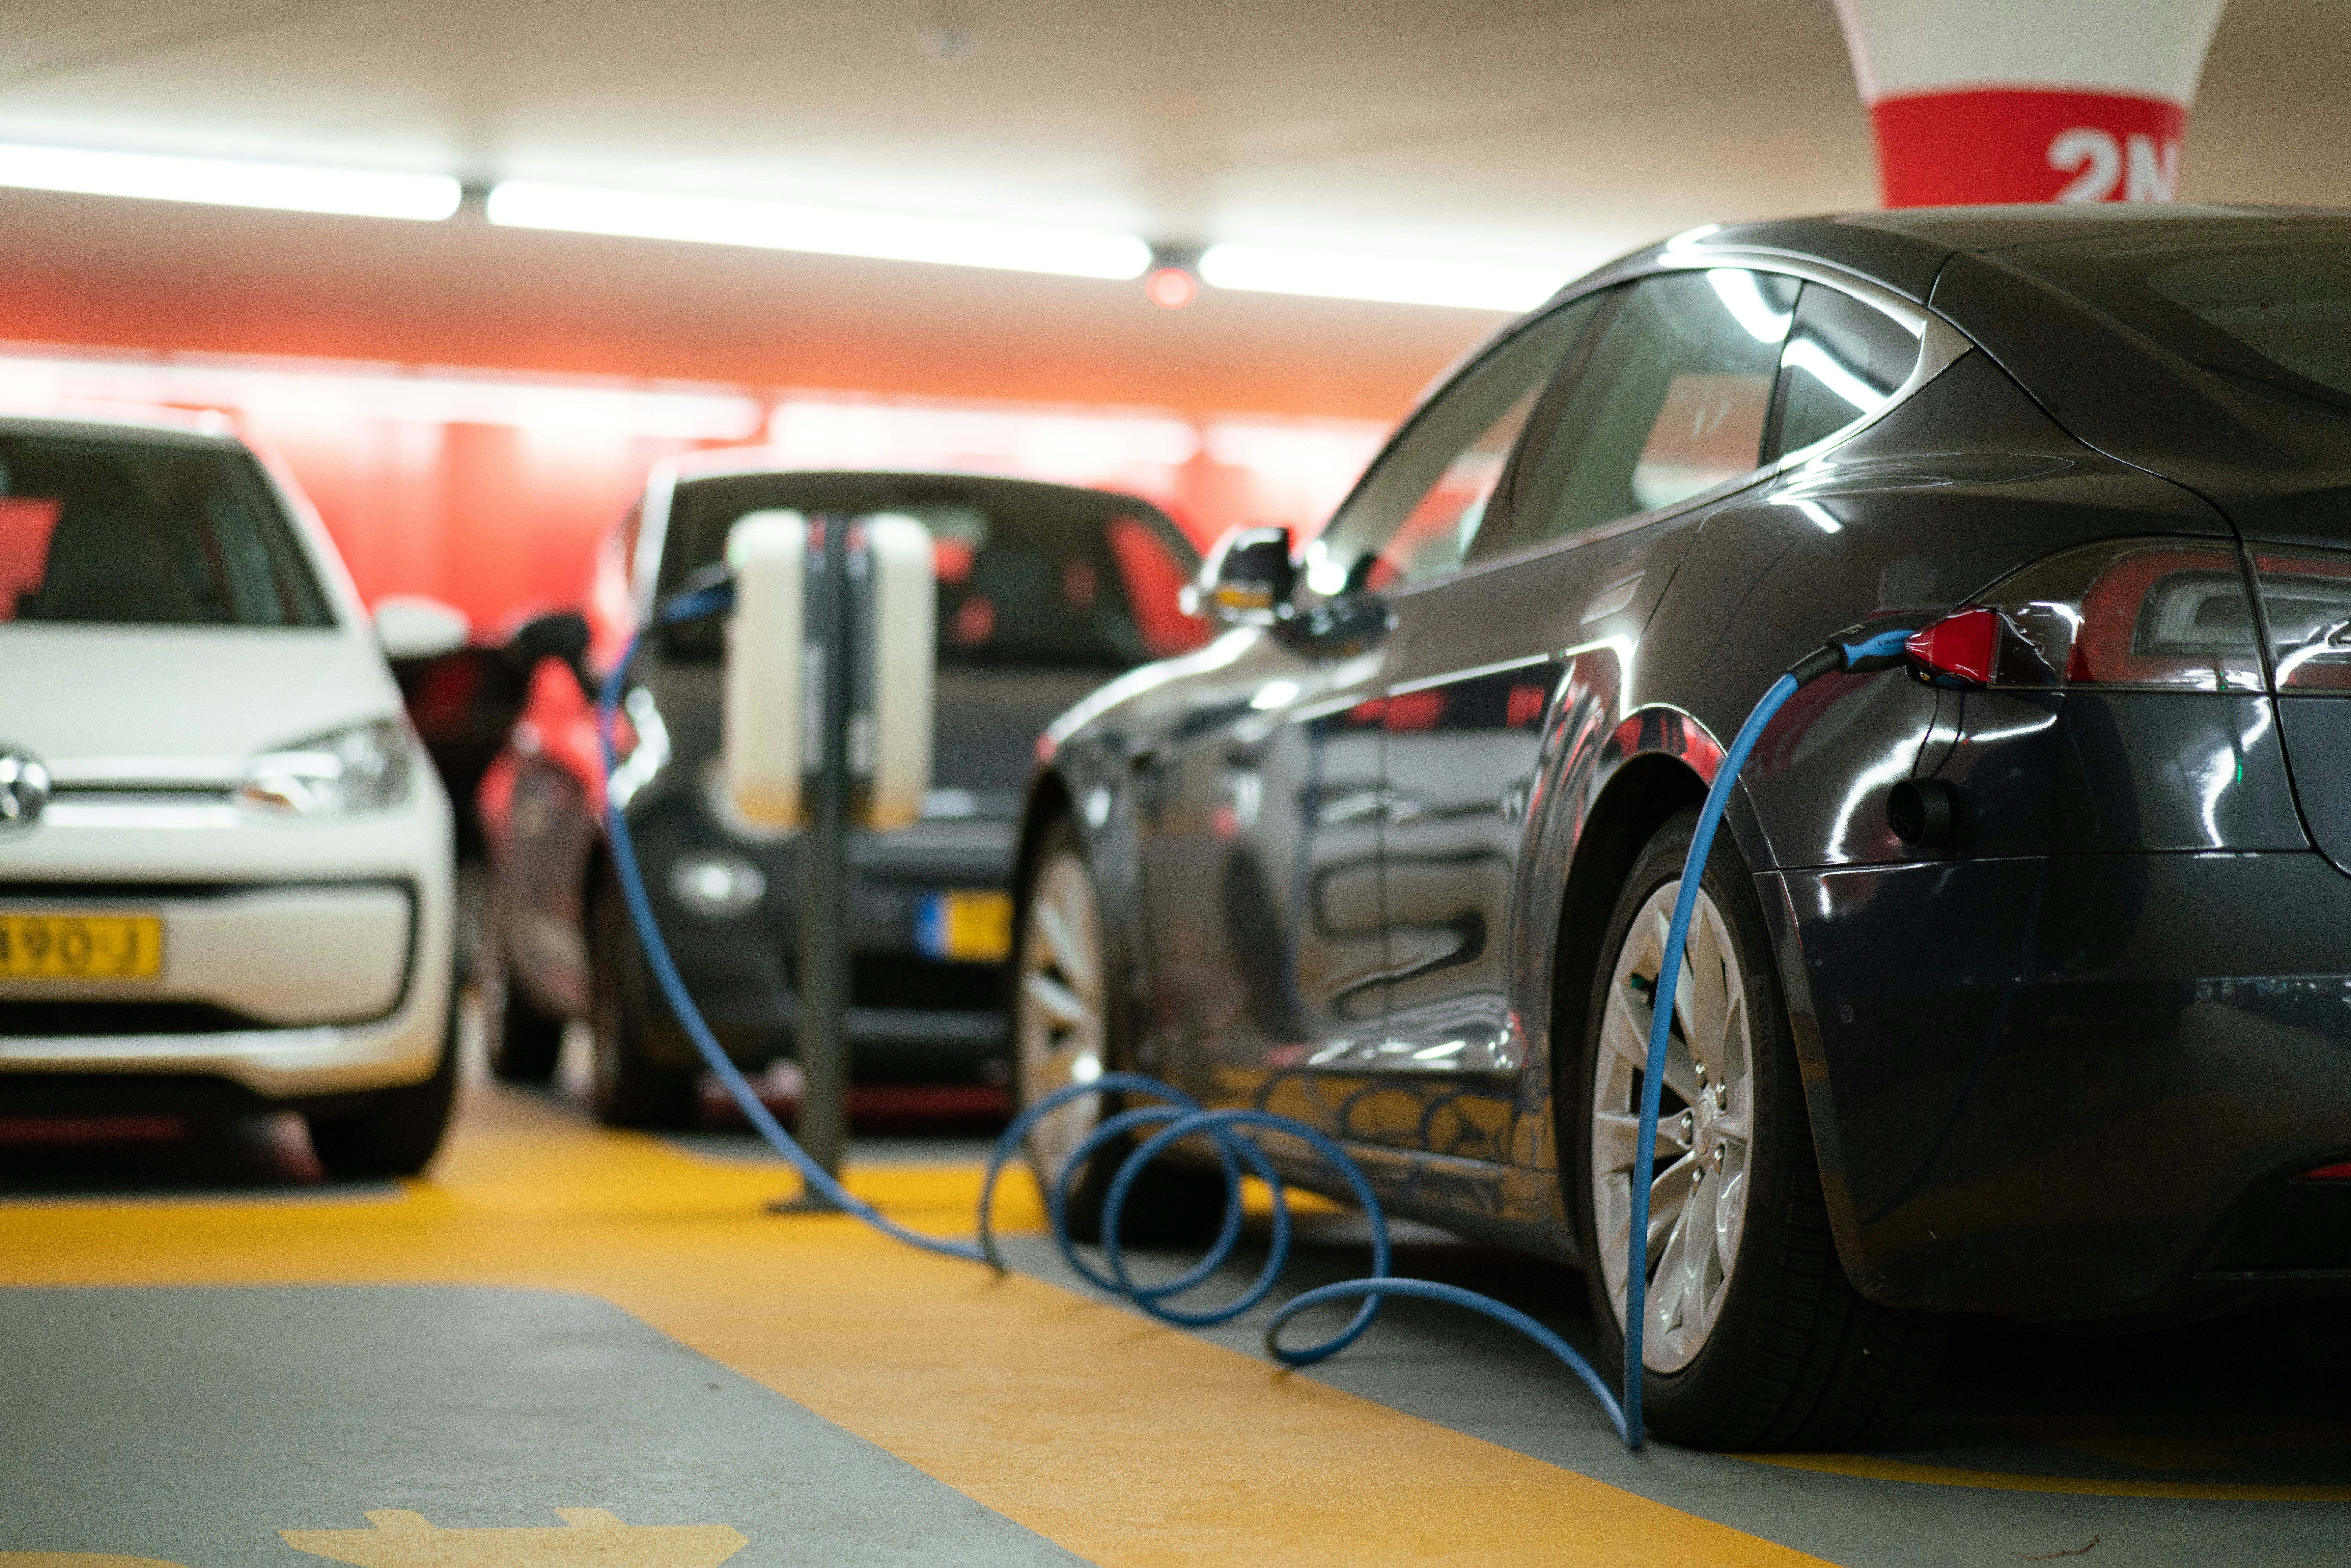 découvrez les avantages des véhicules électriques : économie d'énergie, respect de l'environnement, performances et confort.